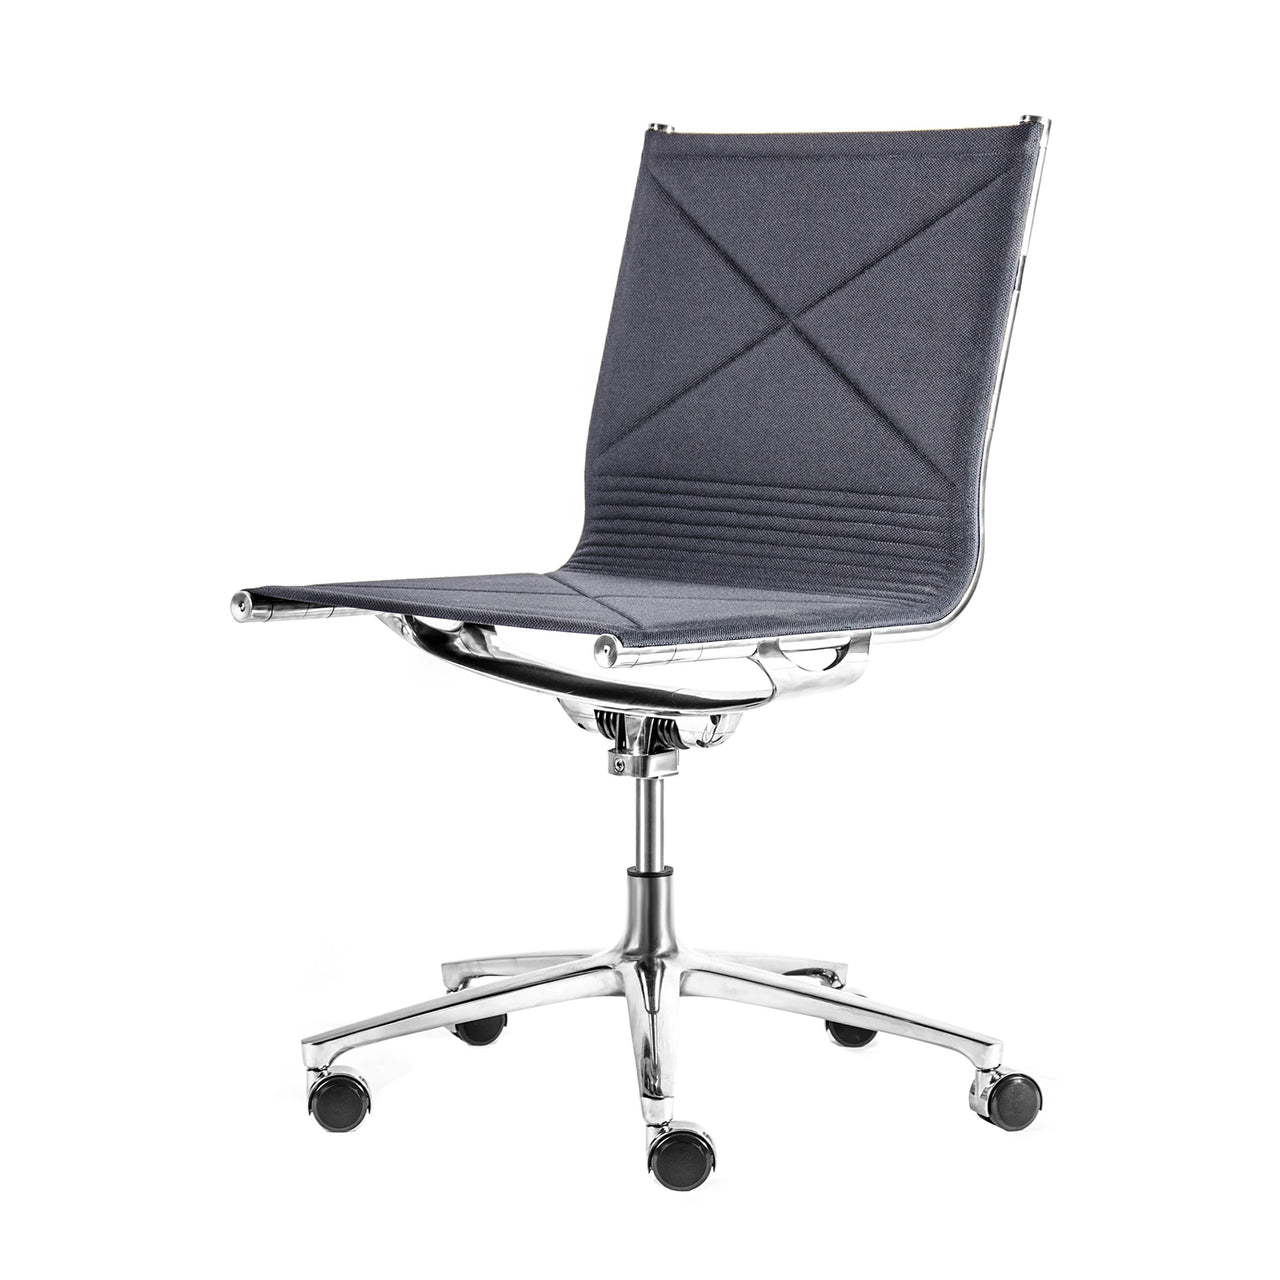 Joint 1210 Chair: 5-Star Swivel Base + Full Upholstered